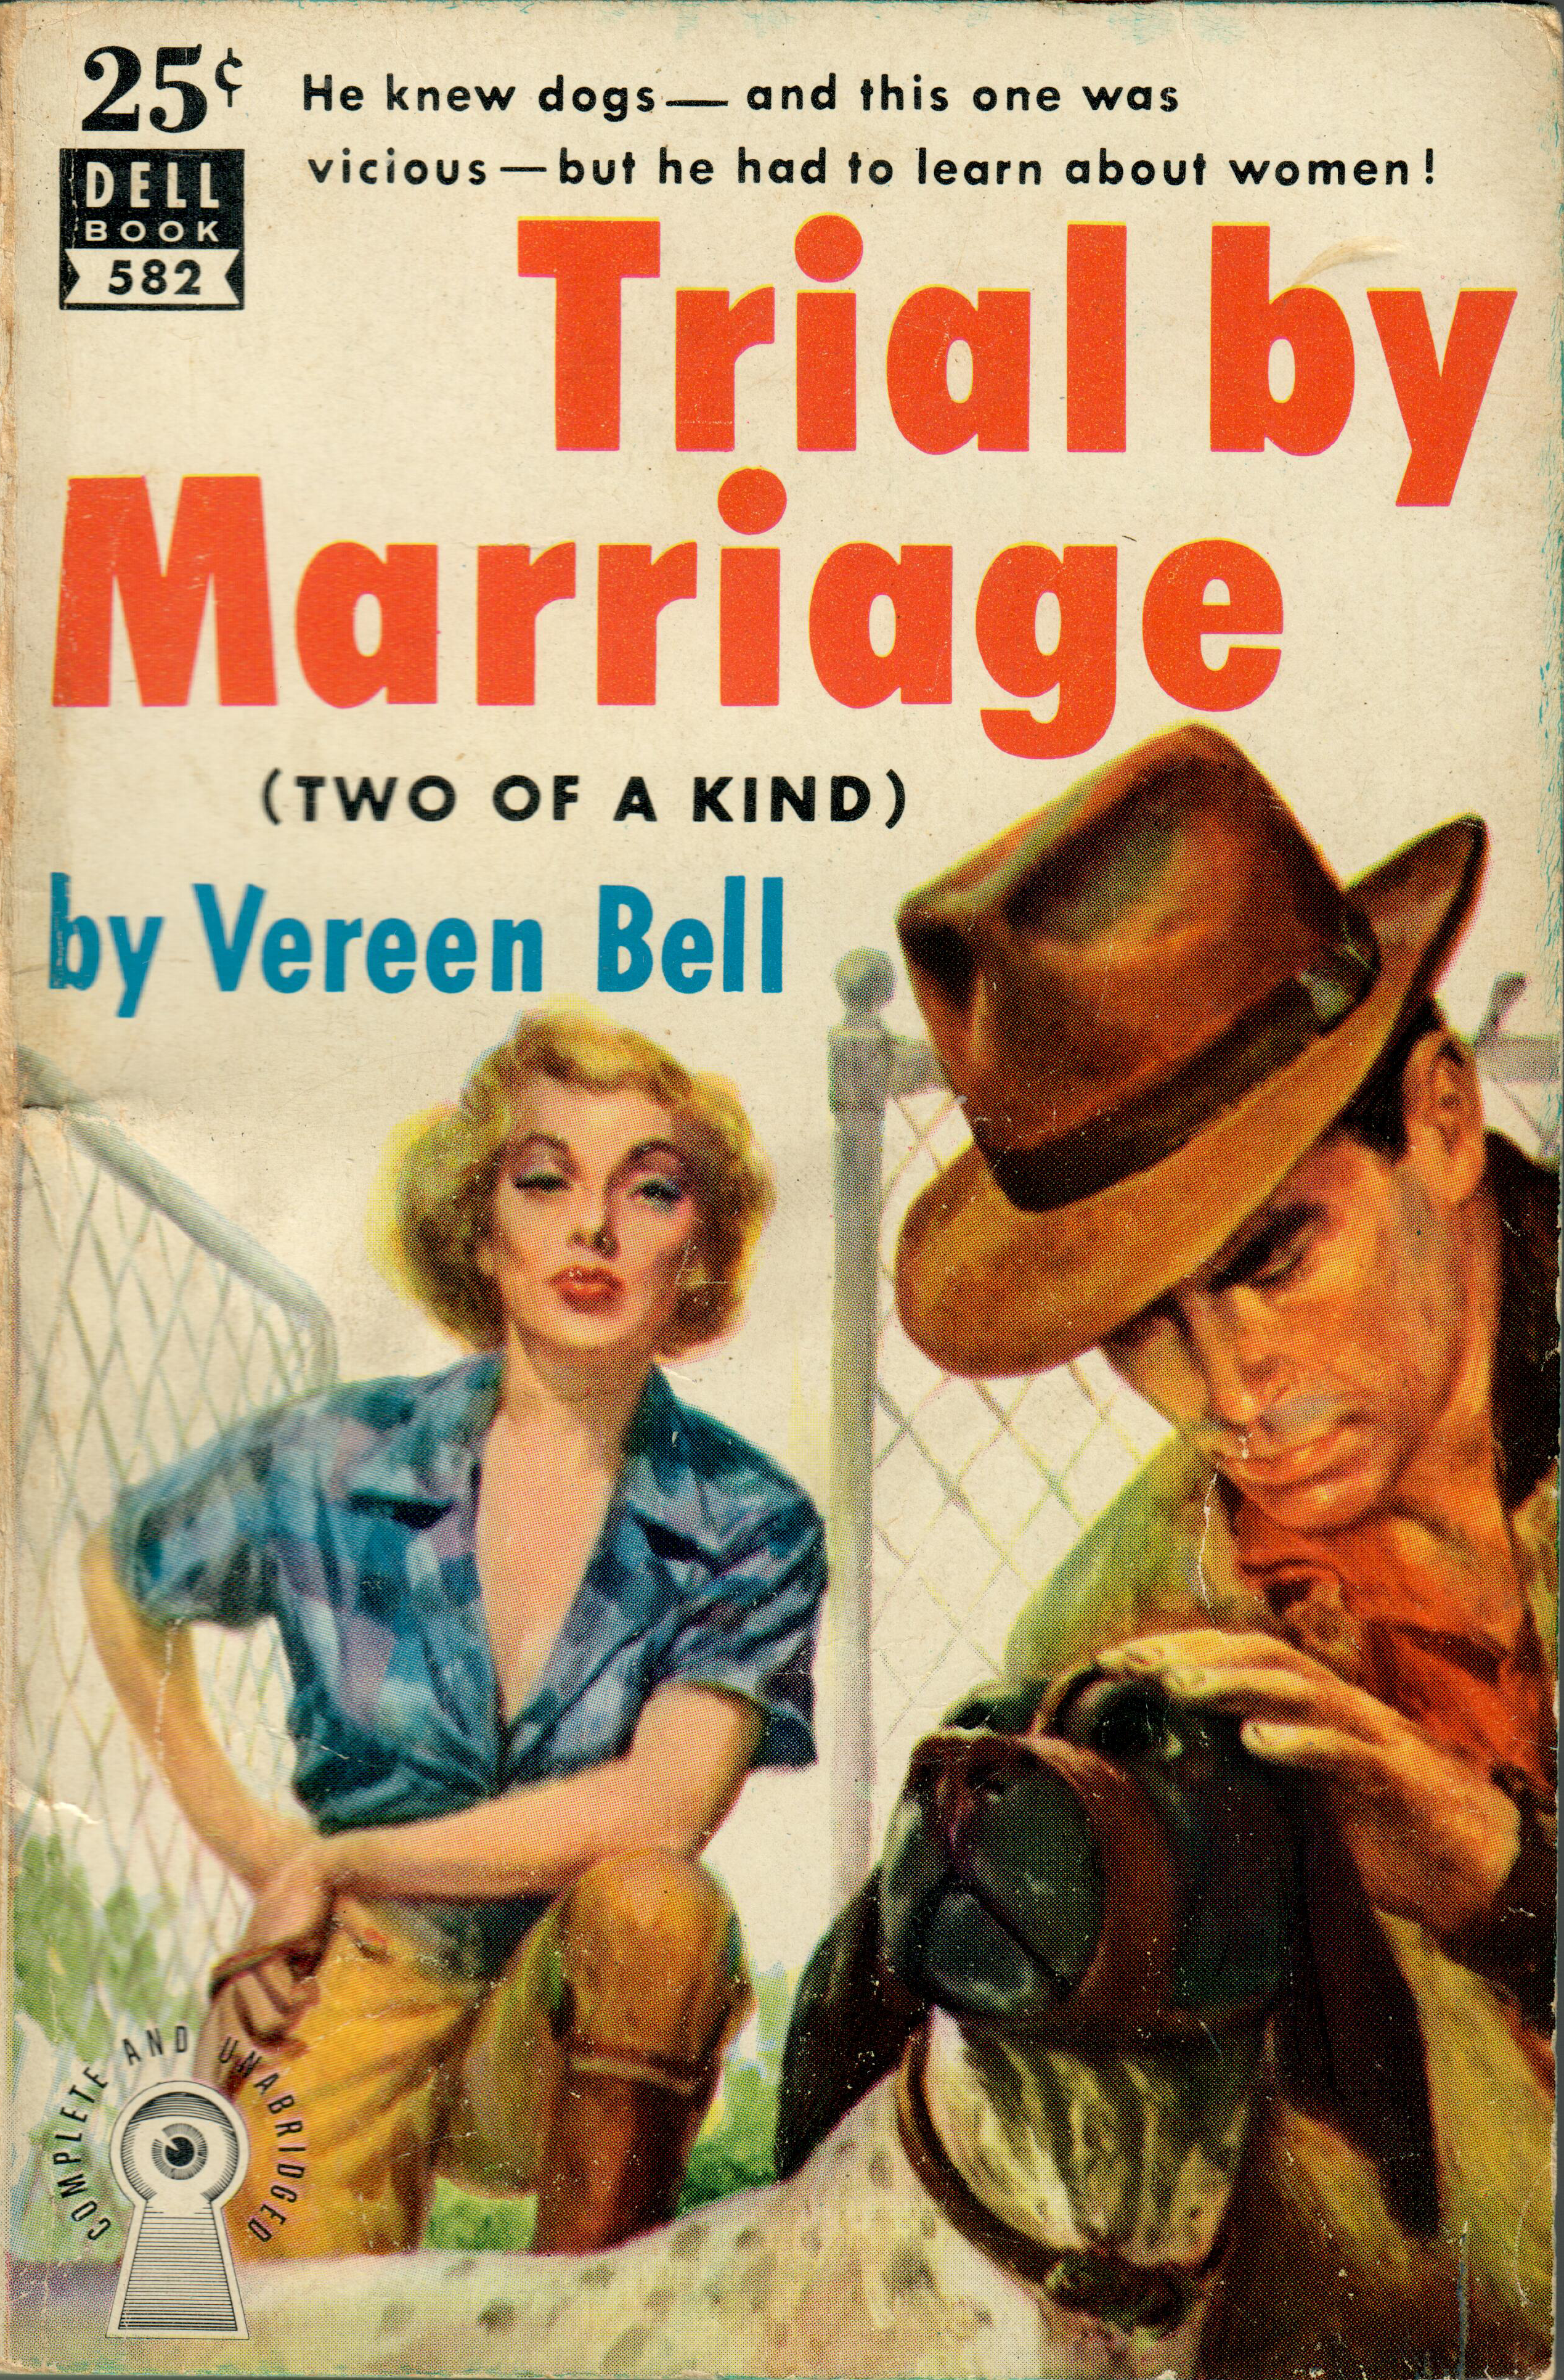 Dell Books 582, 1952